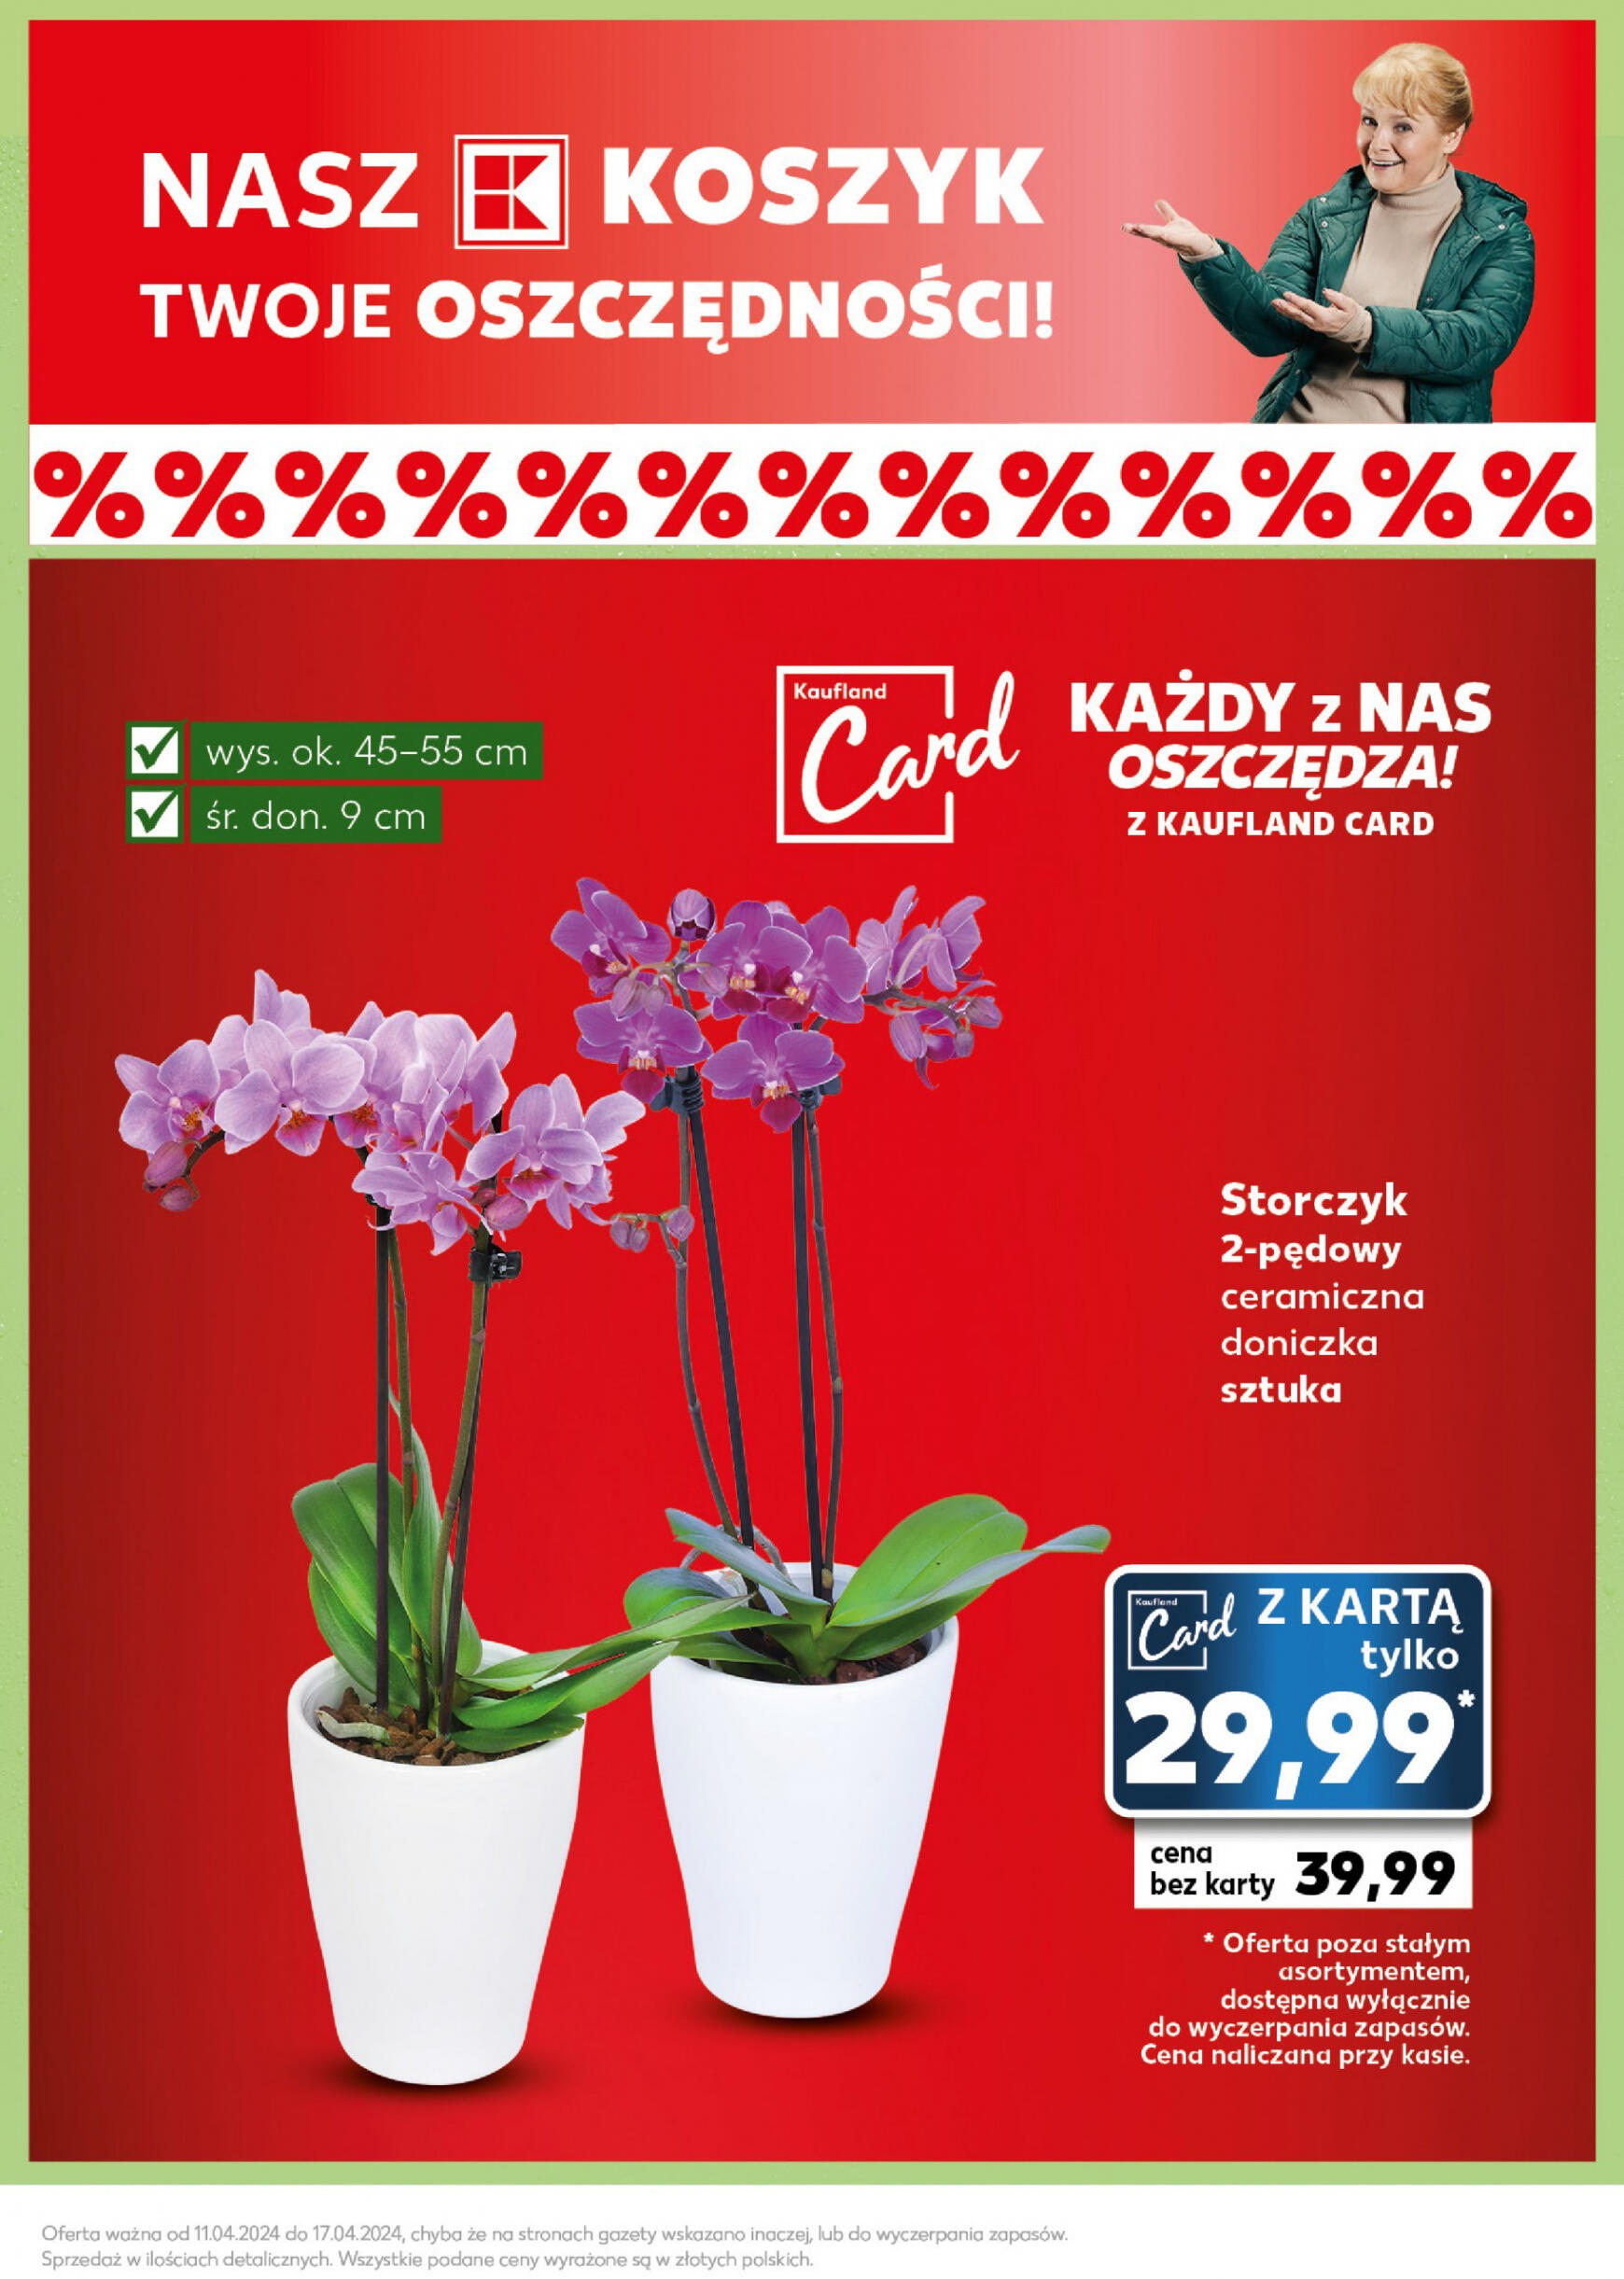 kaufland - Kaufland - Mocny Start gazetka aktualna ważna od 15.04. - 17.04. - page: 15